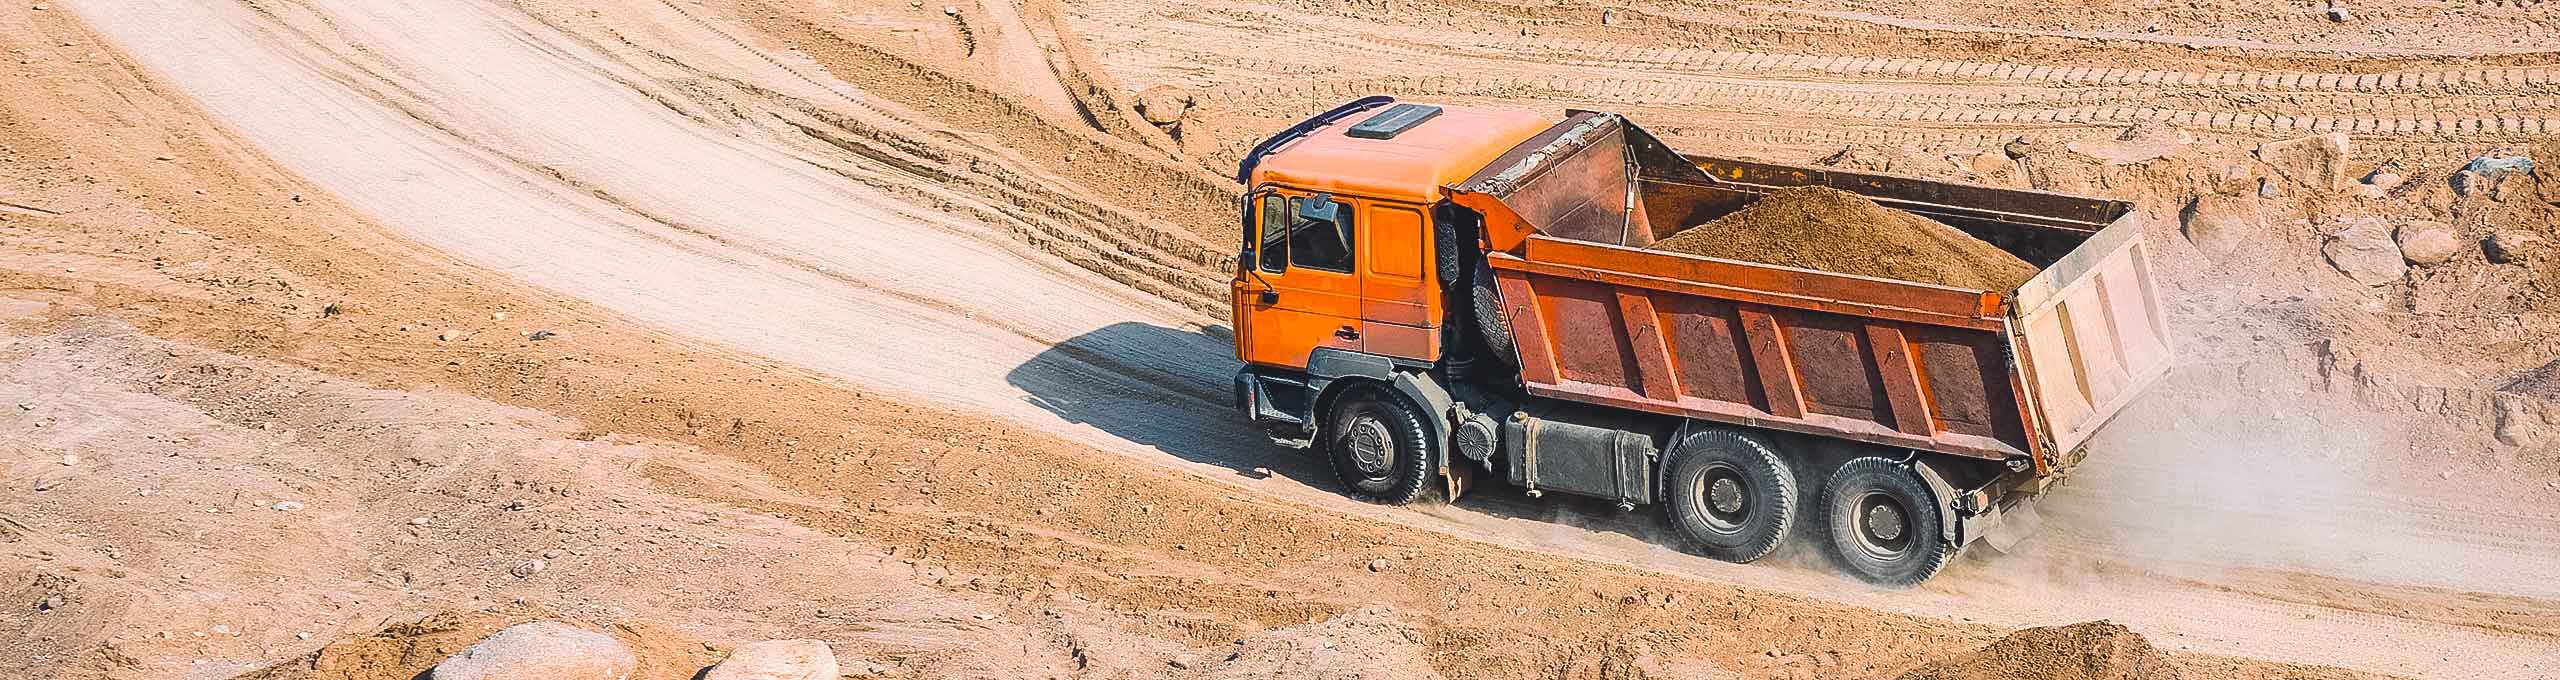 Un camion-benne orange rempli de déchets roule sur une piste en terre.